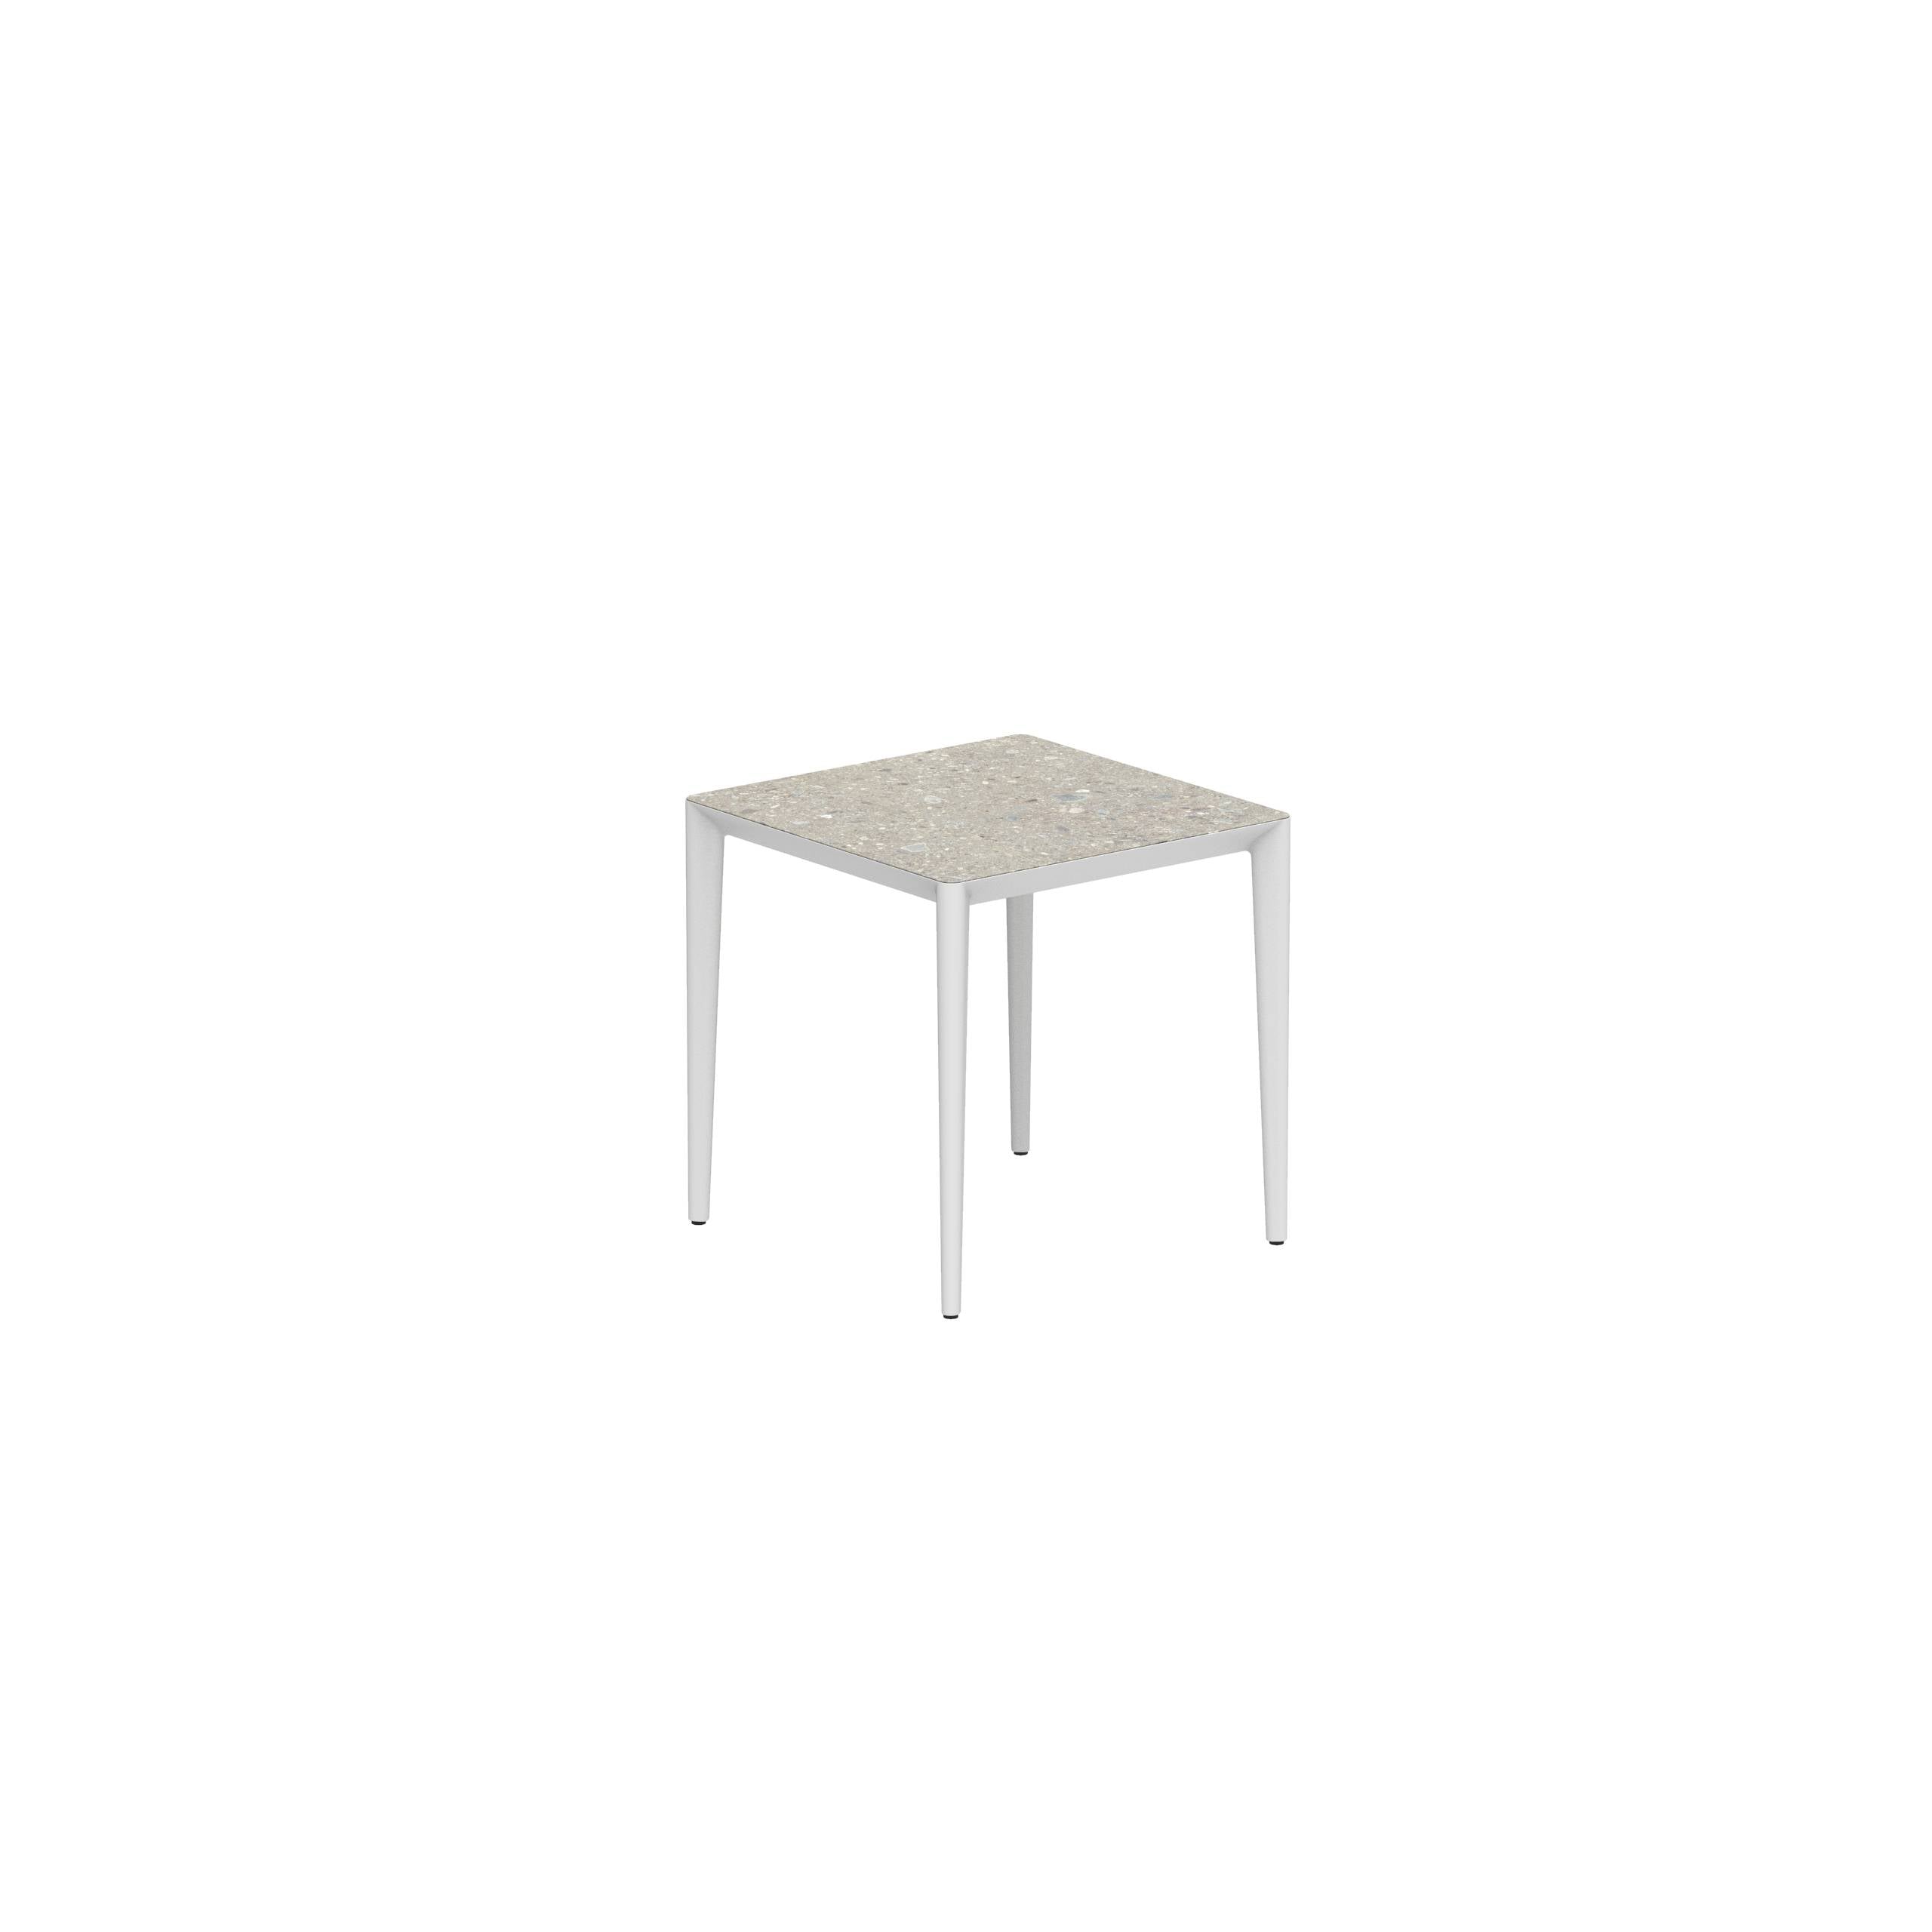 U-Nite Table 74x74cm White With Ceramic Tabletop In Ceppo Dolomitica